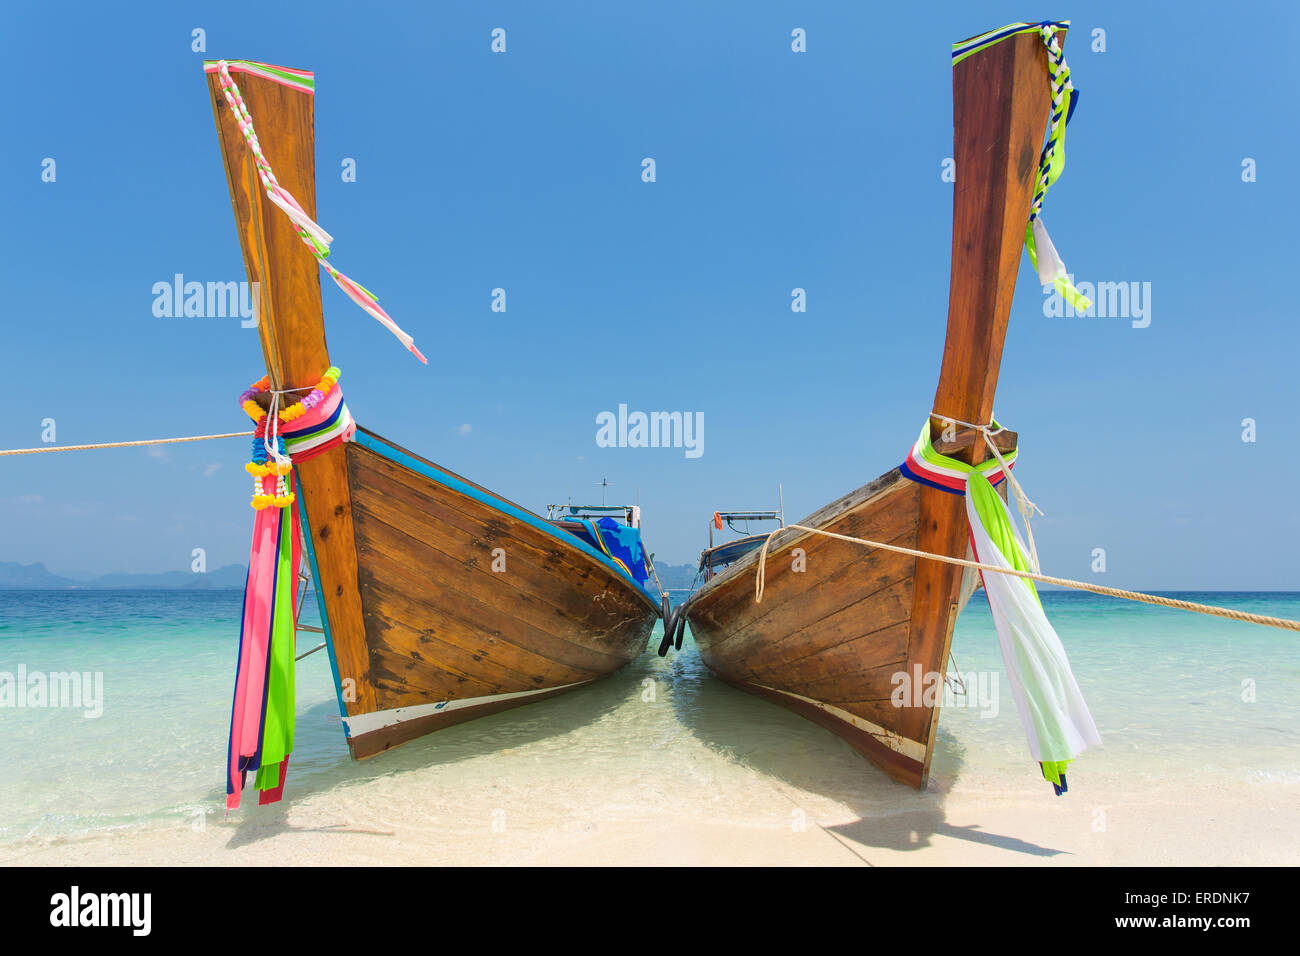 Bateaux Longtail au Tropical Beach de Poda Island dans la mer d'Andaman, Thaïlande Banque D'Images